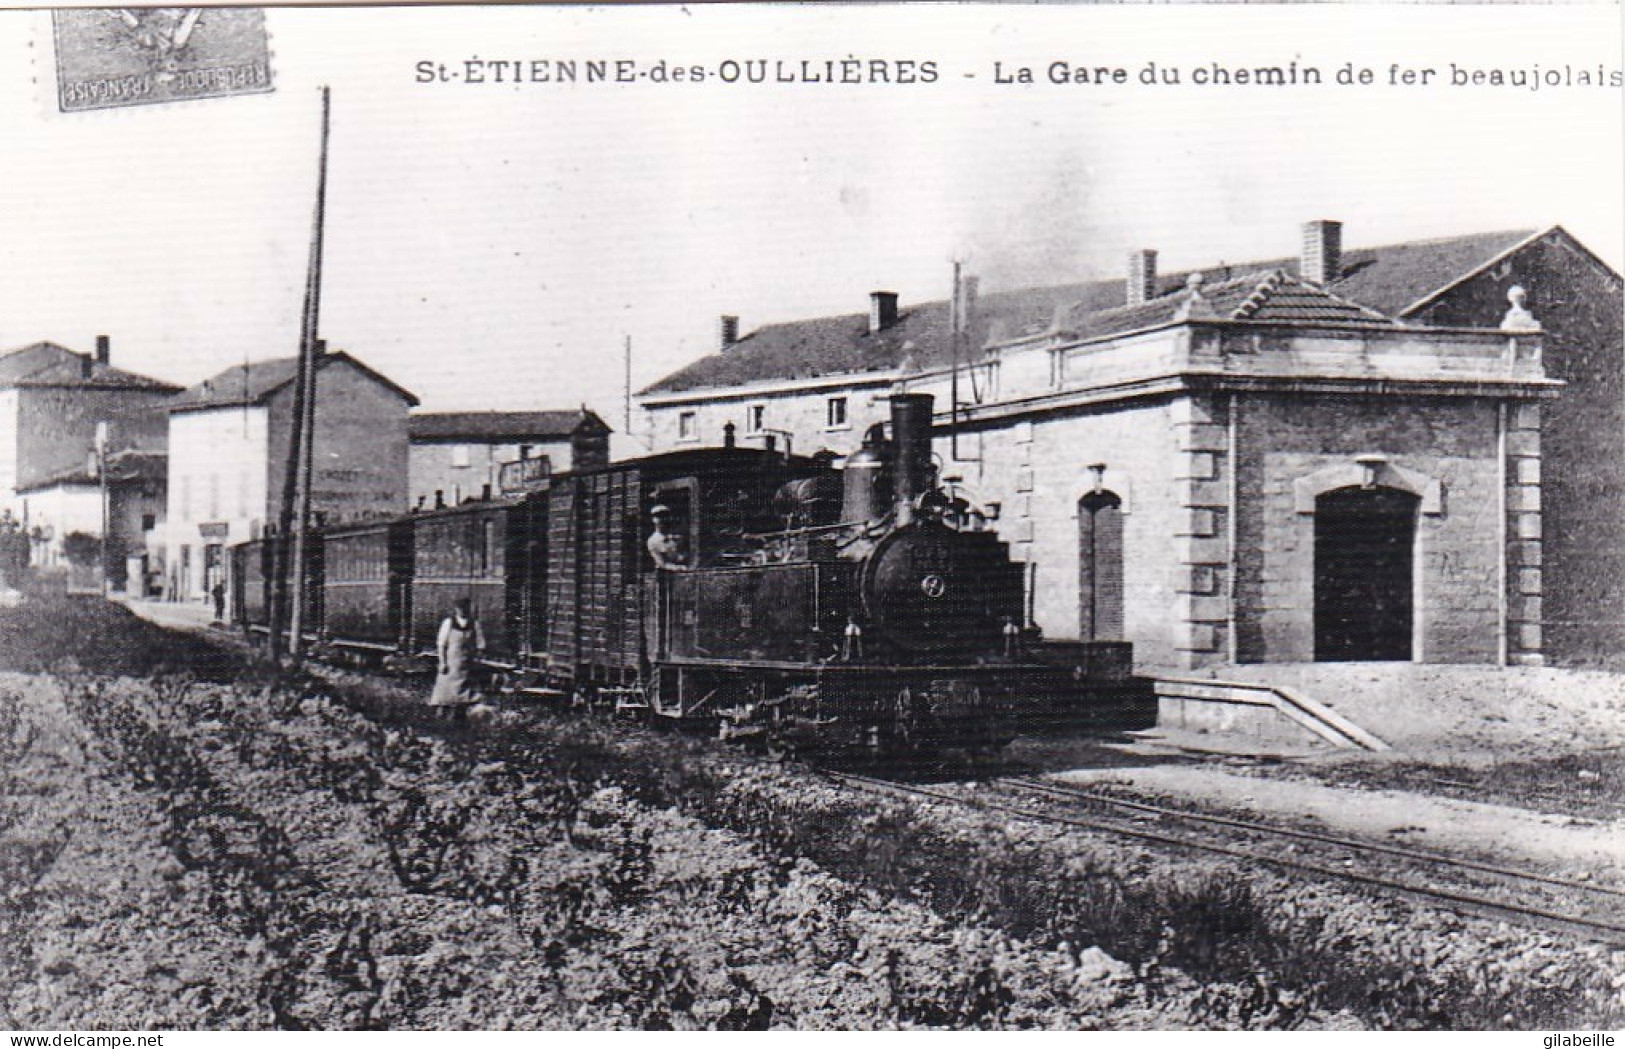 Photo - 69 - Rhone - SAINT ETIENNE Des OULLIERES - La Gare Du C.F.B  - Ligne De Monsols-  Retirage - Ohne Zuordnung